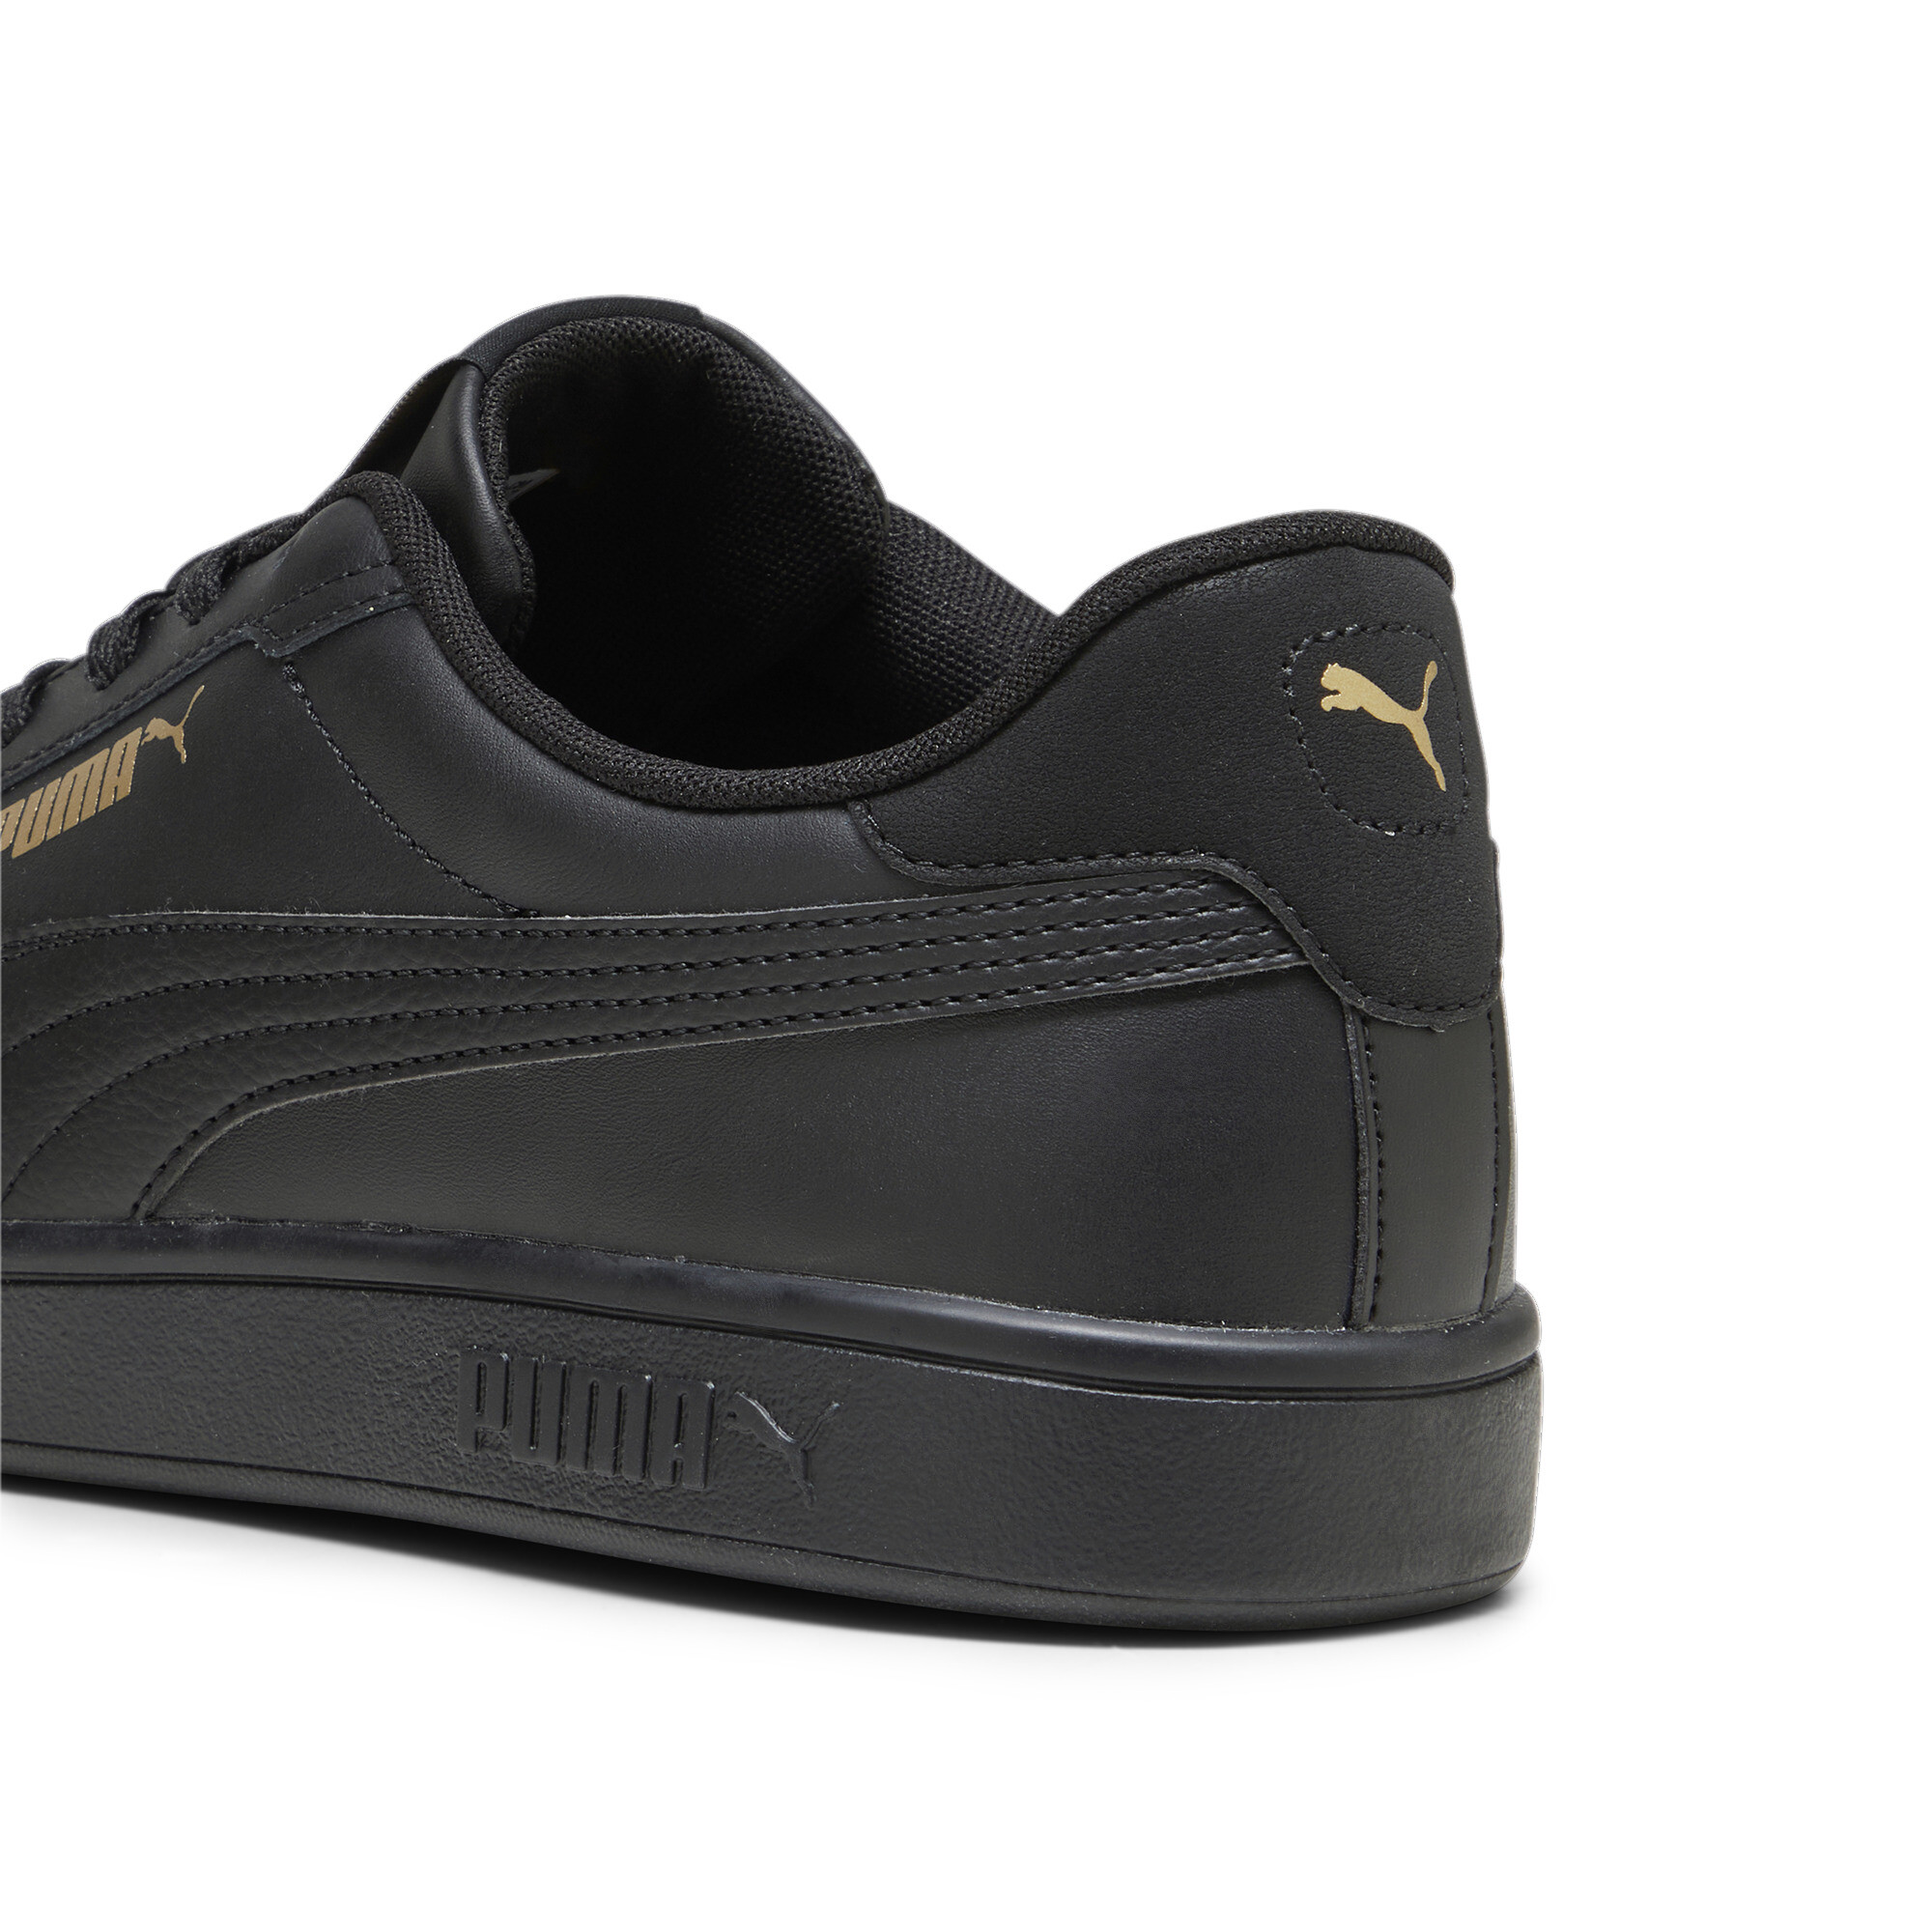 PUMA Smash 3.0 L Low Trainers Sports Shoes Unisex | eBay